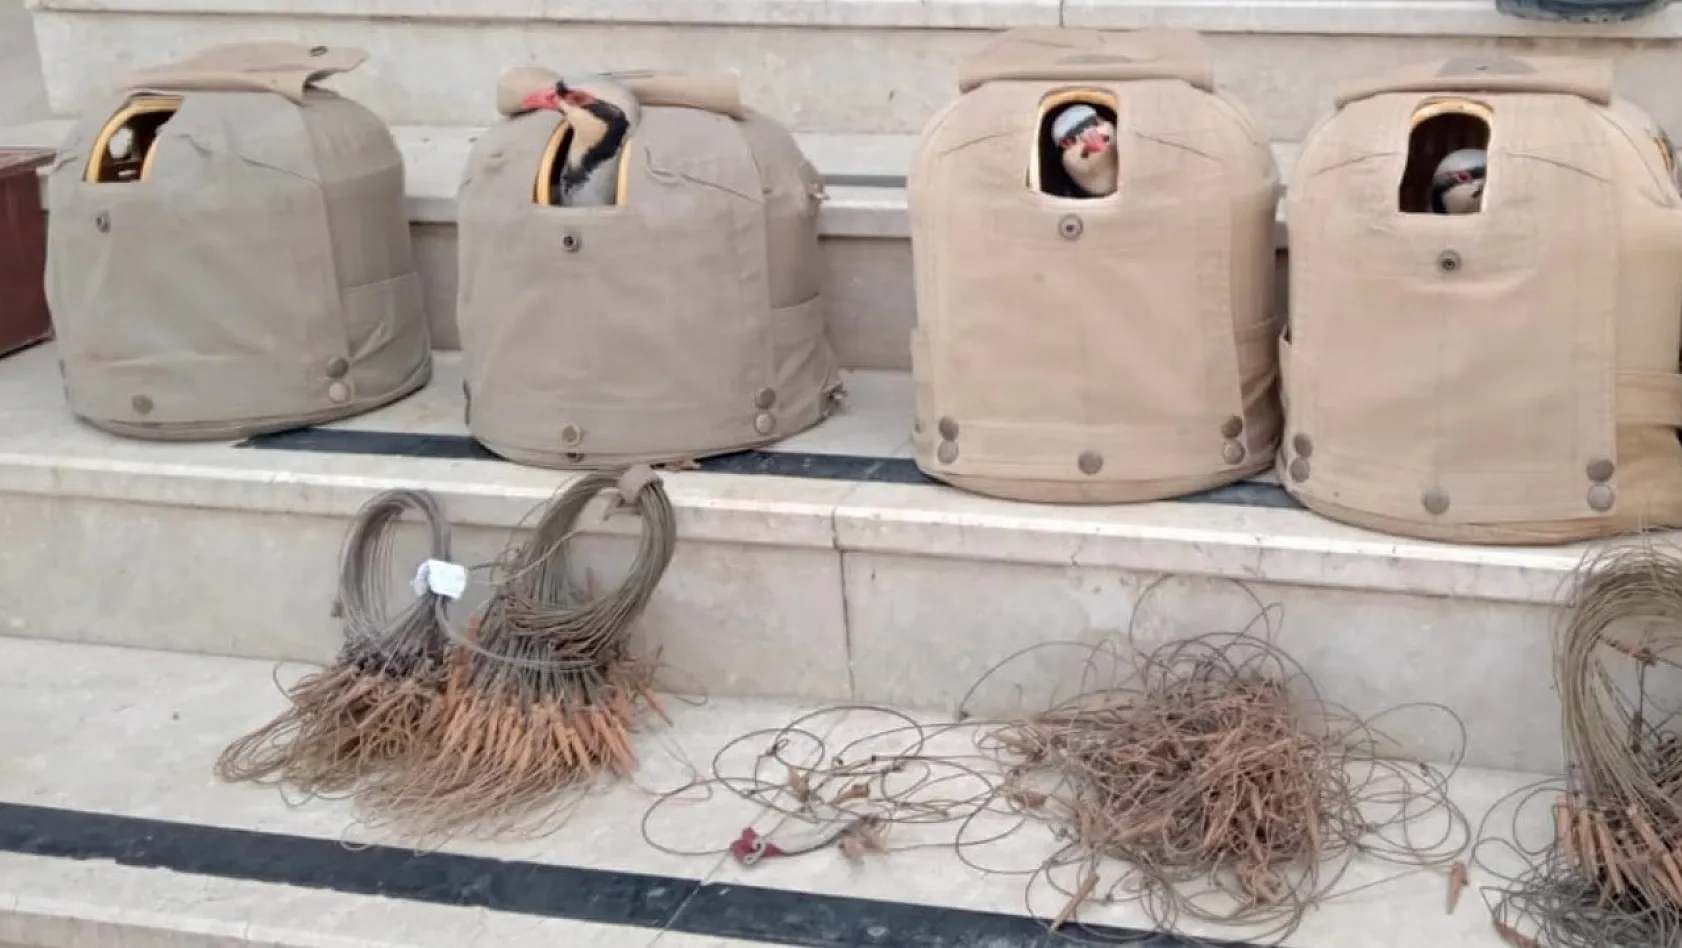 Elazığ'da yasa dışı avcılık yapan 4 kişi hakkında idari işlem yapıldı